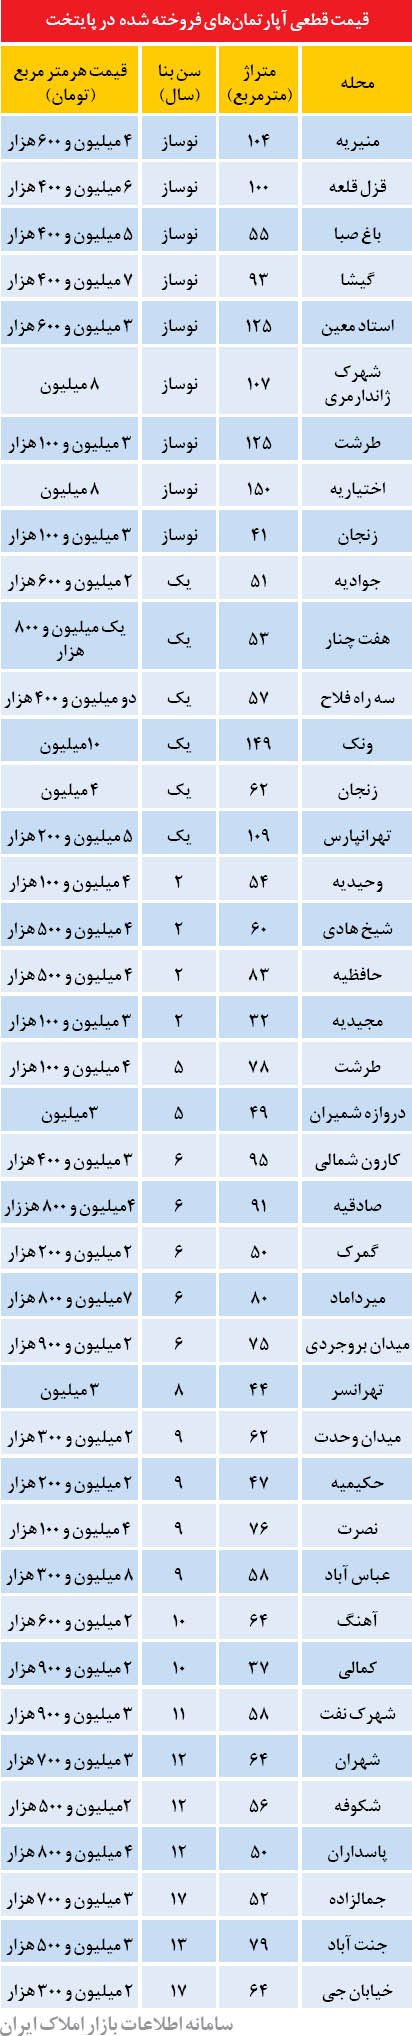 قیمت آپارتمان در برخی نقاط تهران (+جدول)